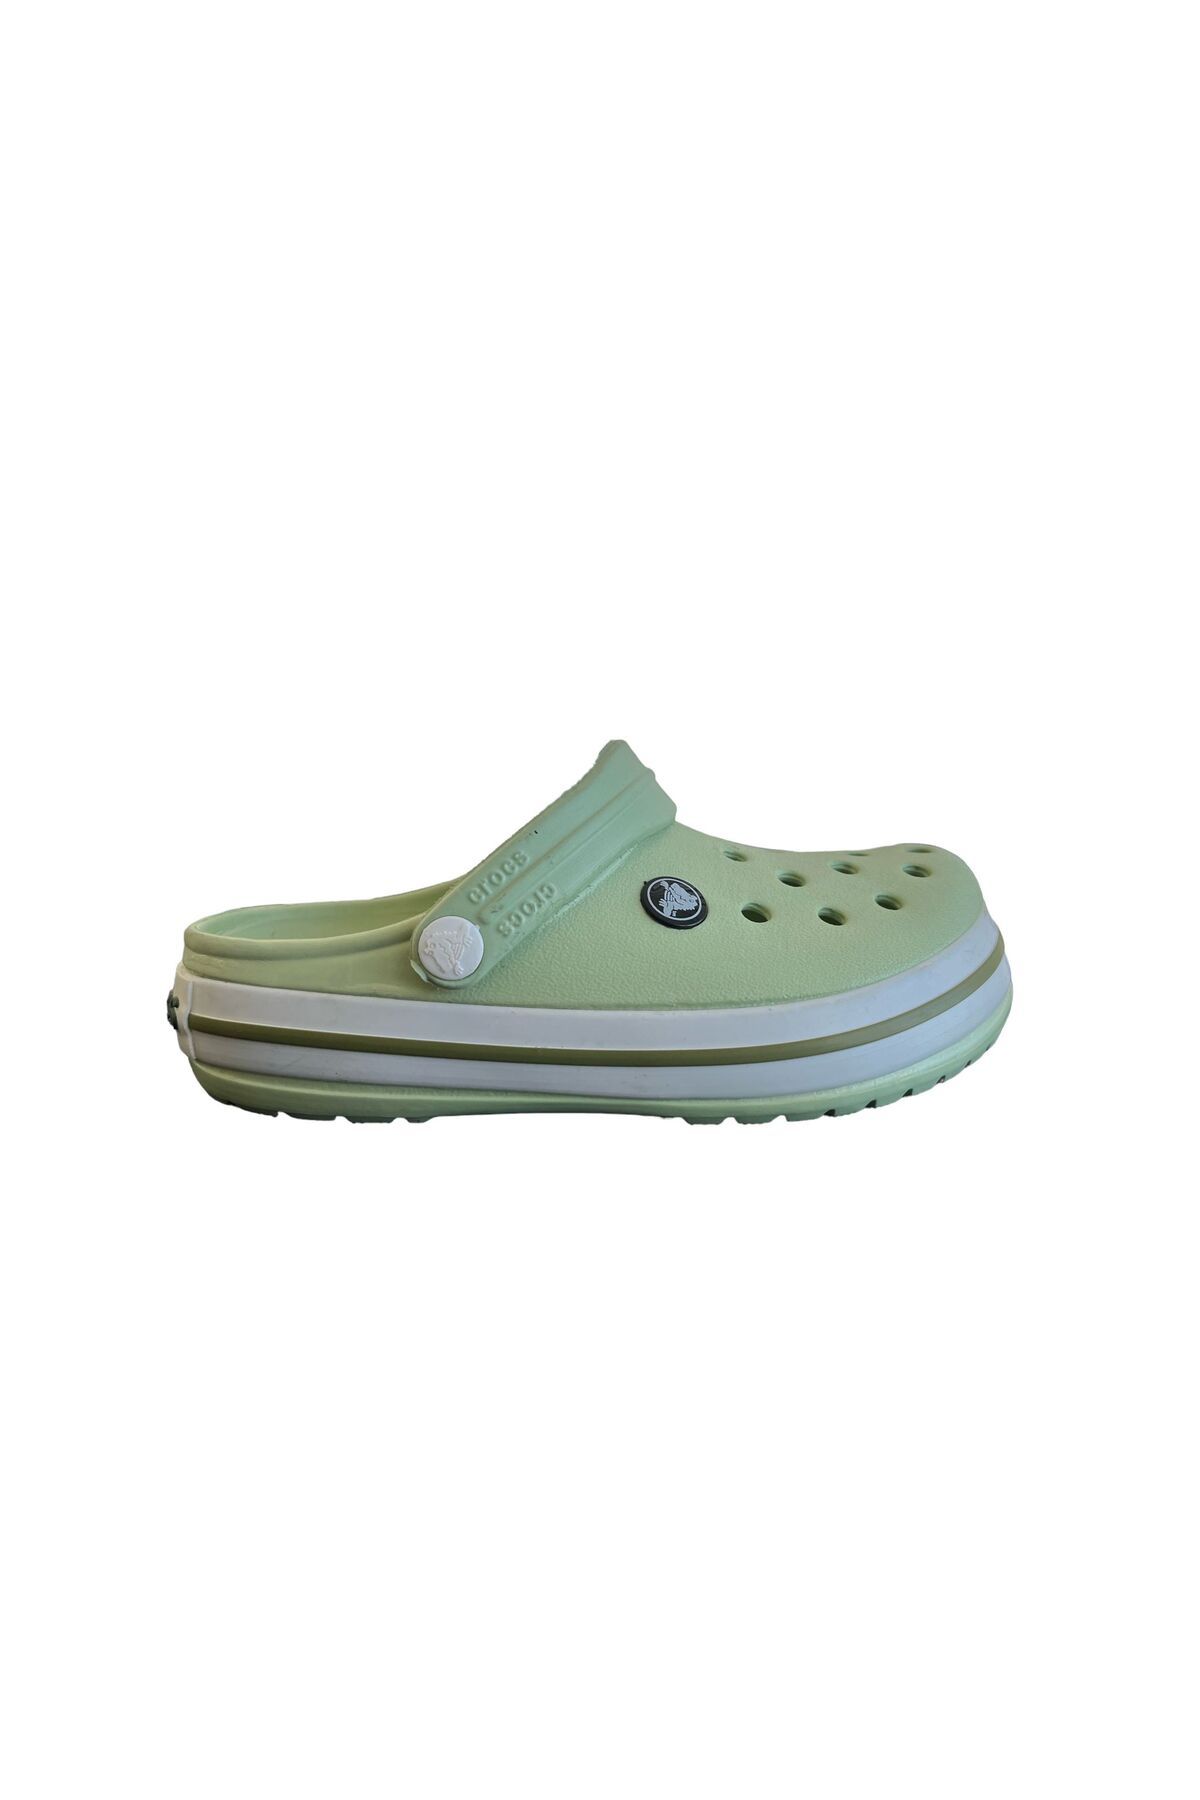 Crocs Crocband Yeşil/Yeşil